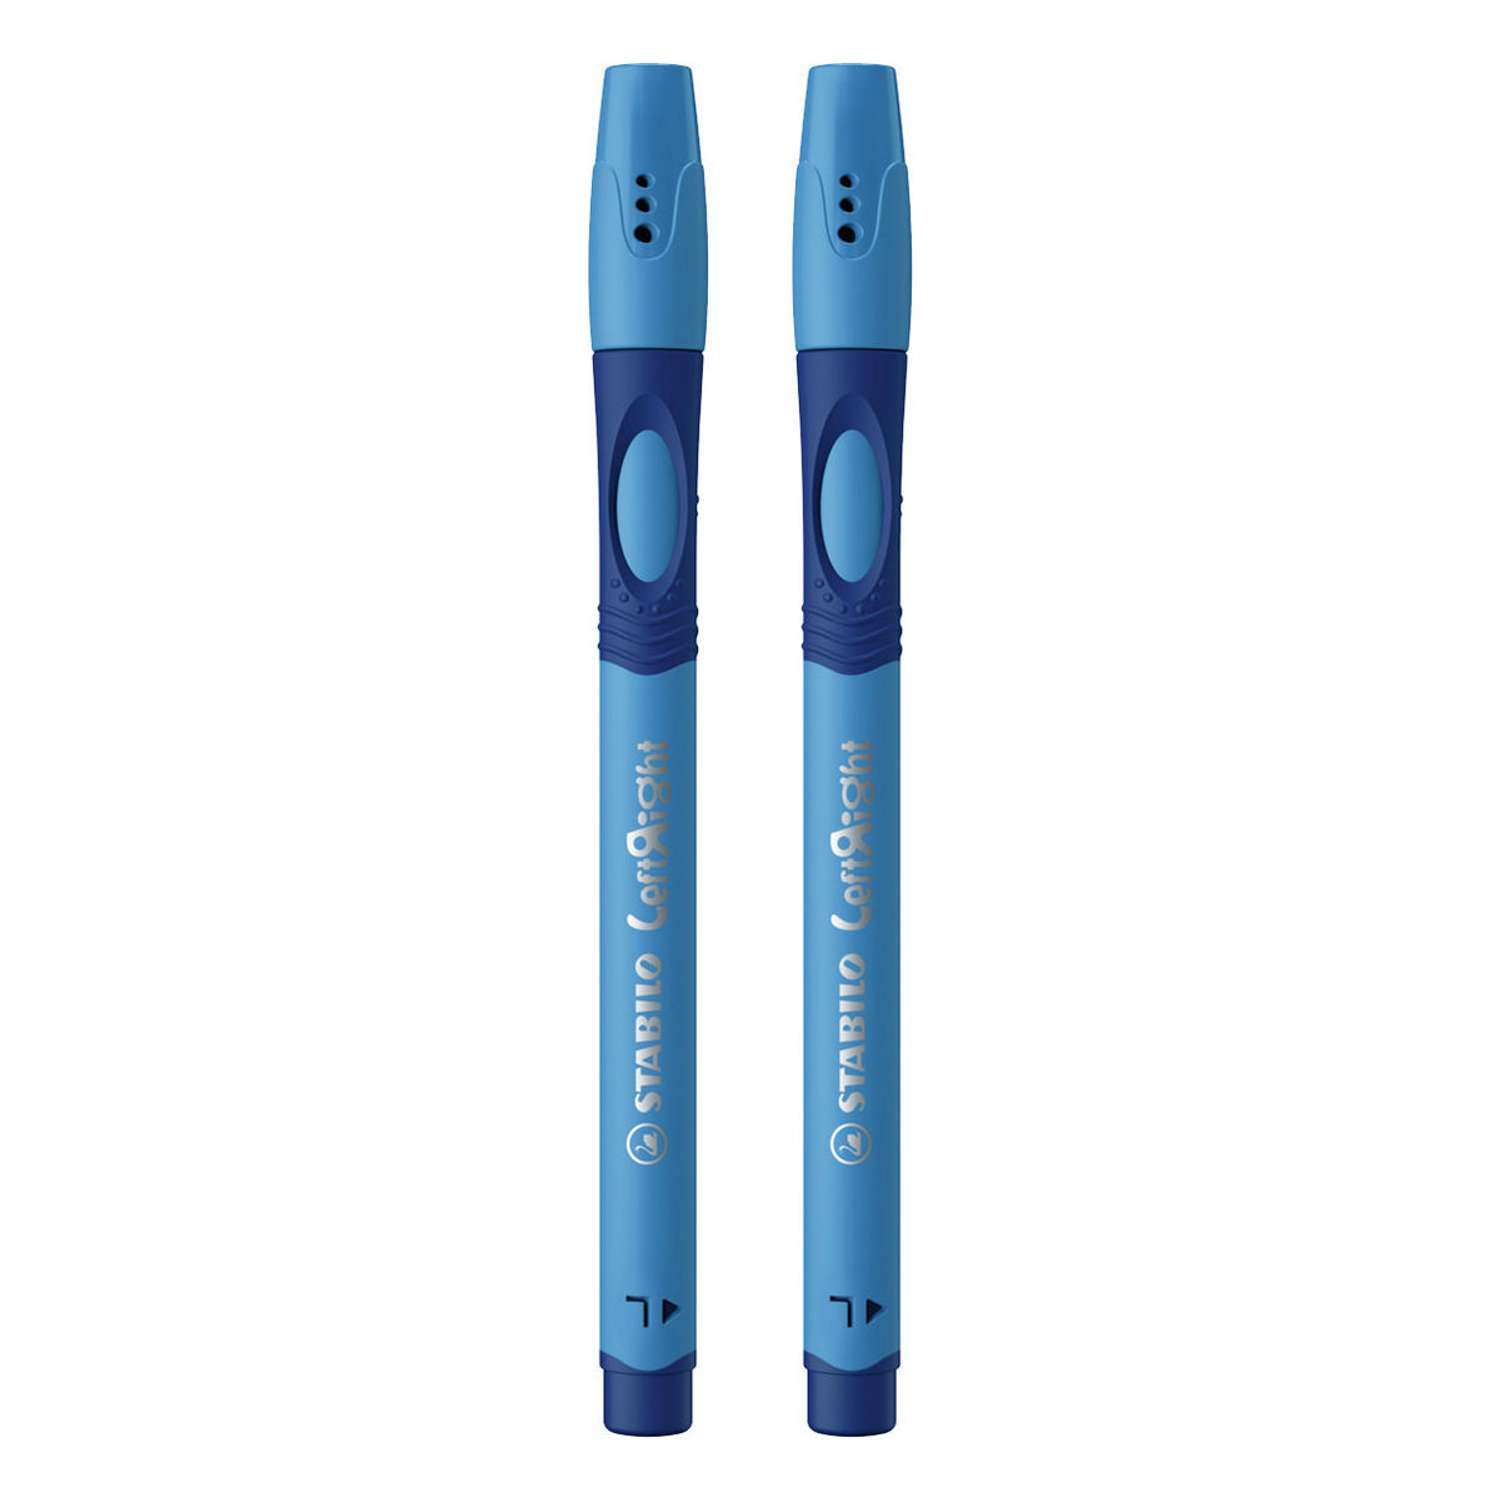 Ручка шариковая масляная STABILO LeftRight для левшей для обучения письму F синяя / корпус синий 2штуки в пакете - фото 2